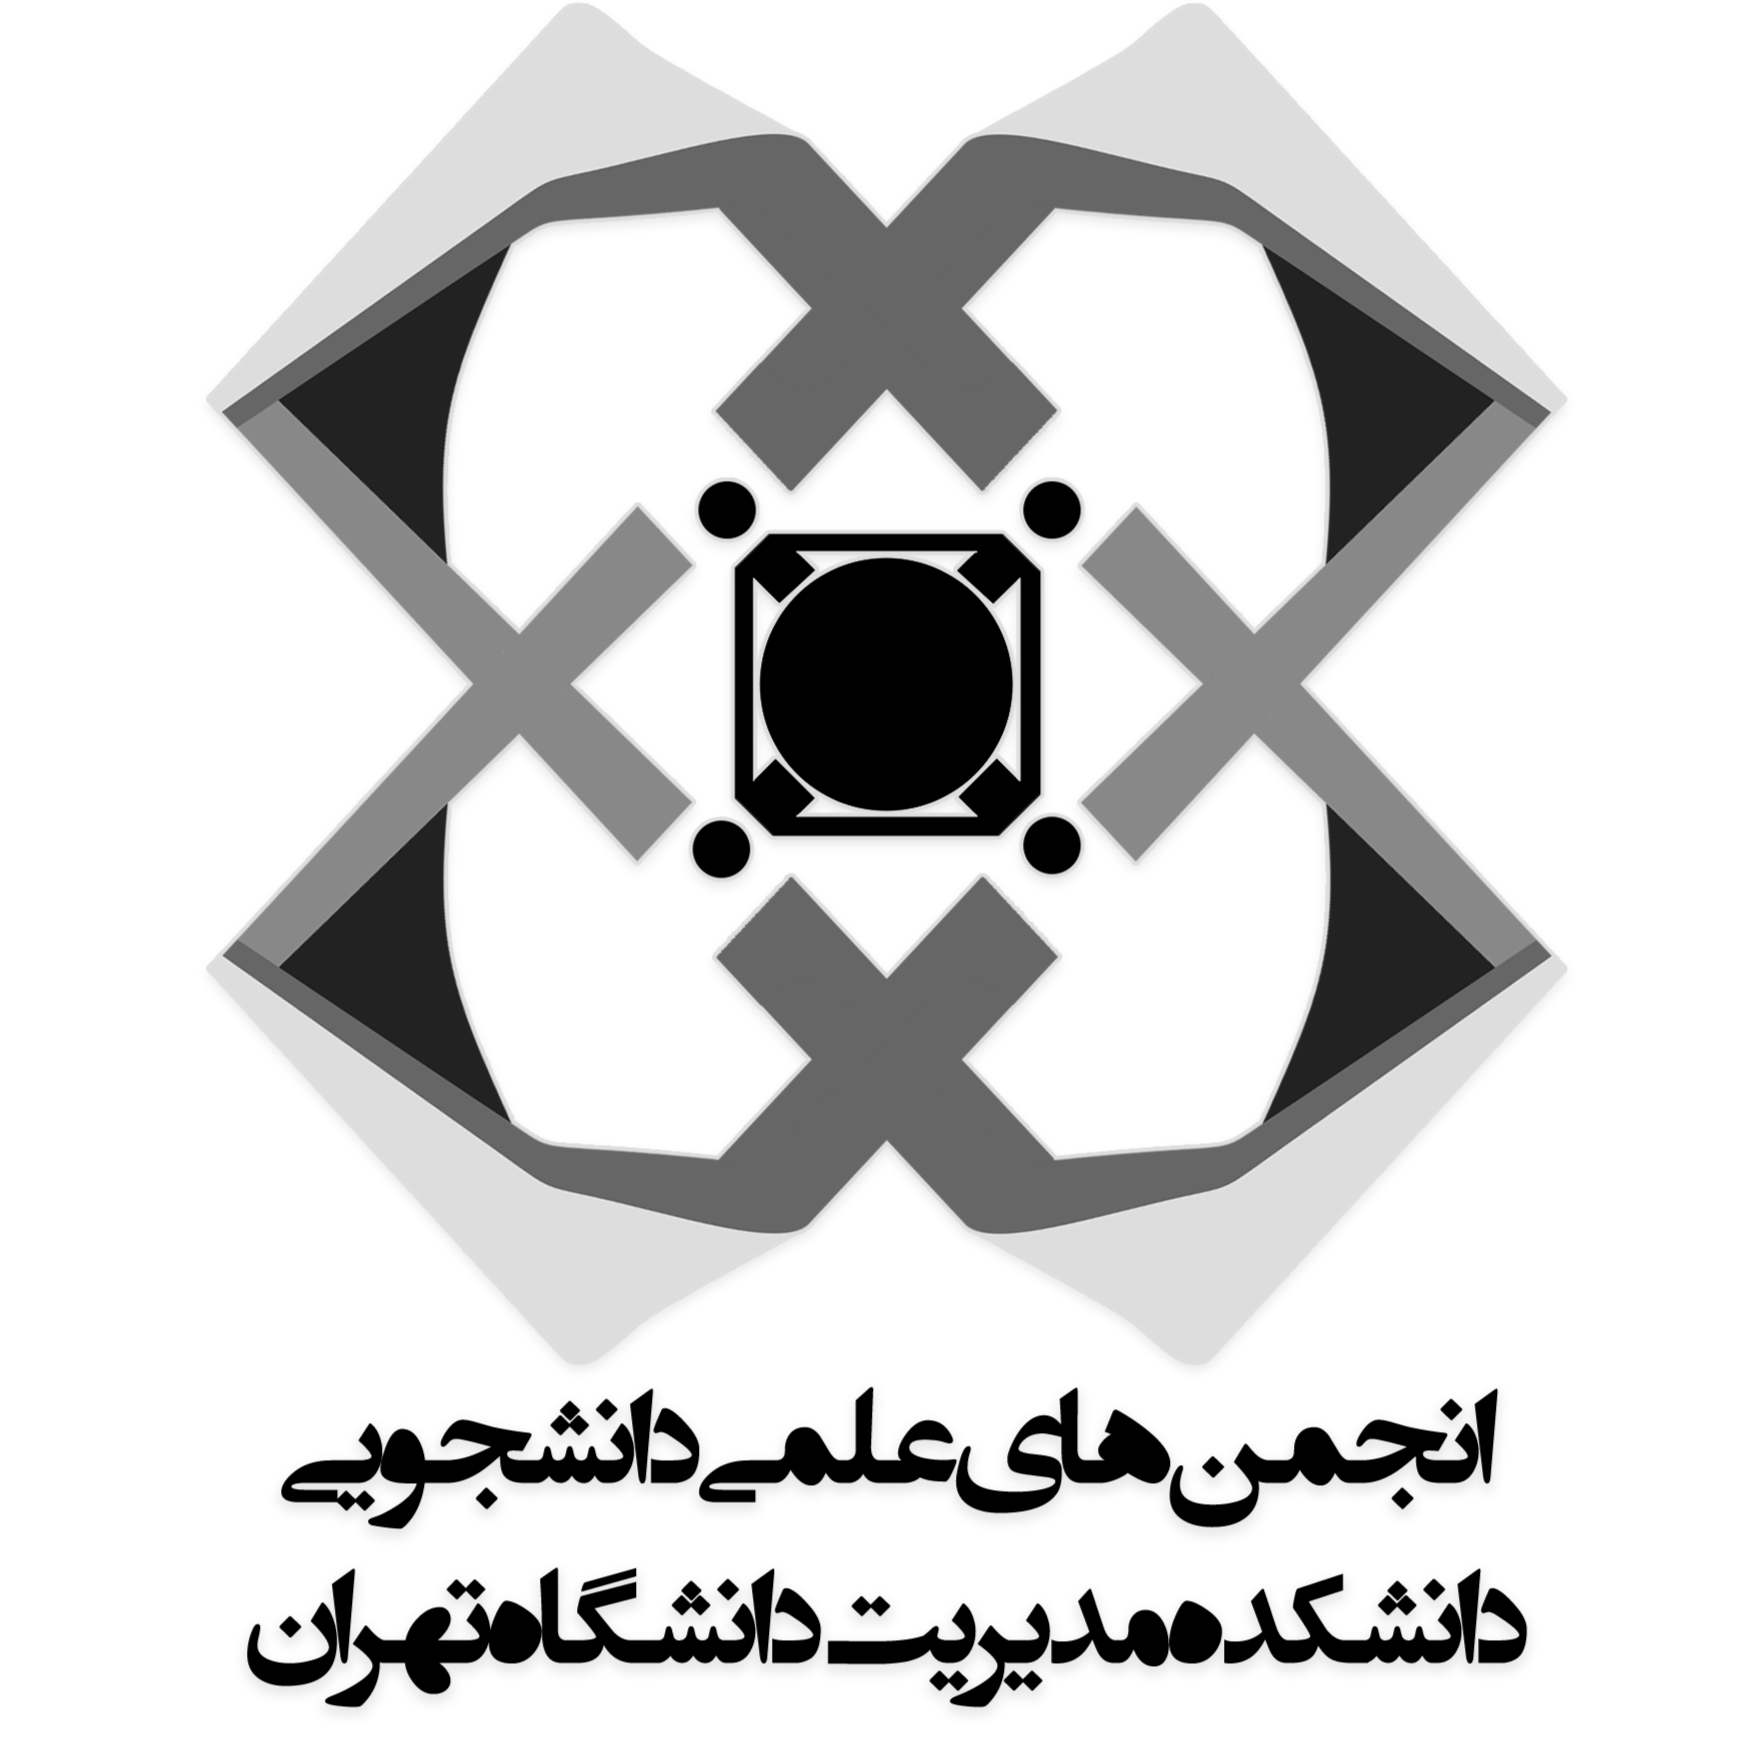 انجمن های علمی دانشجویی مدیریت دانشگاه تهران